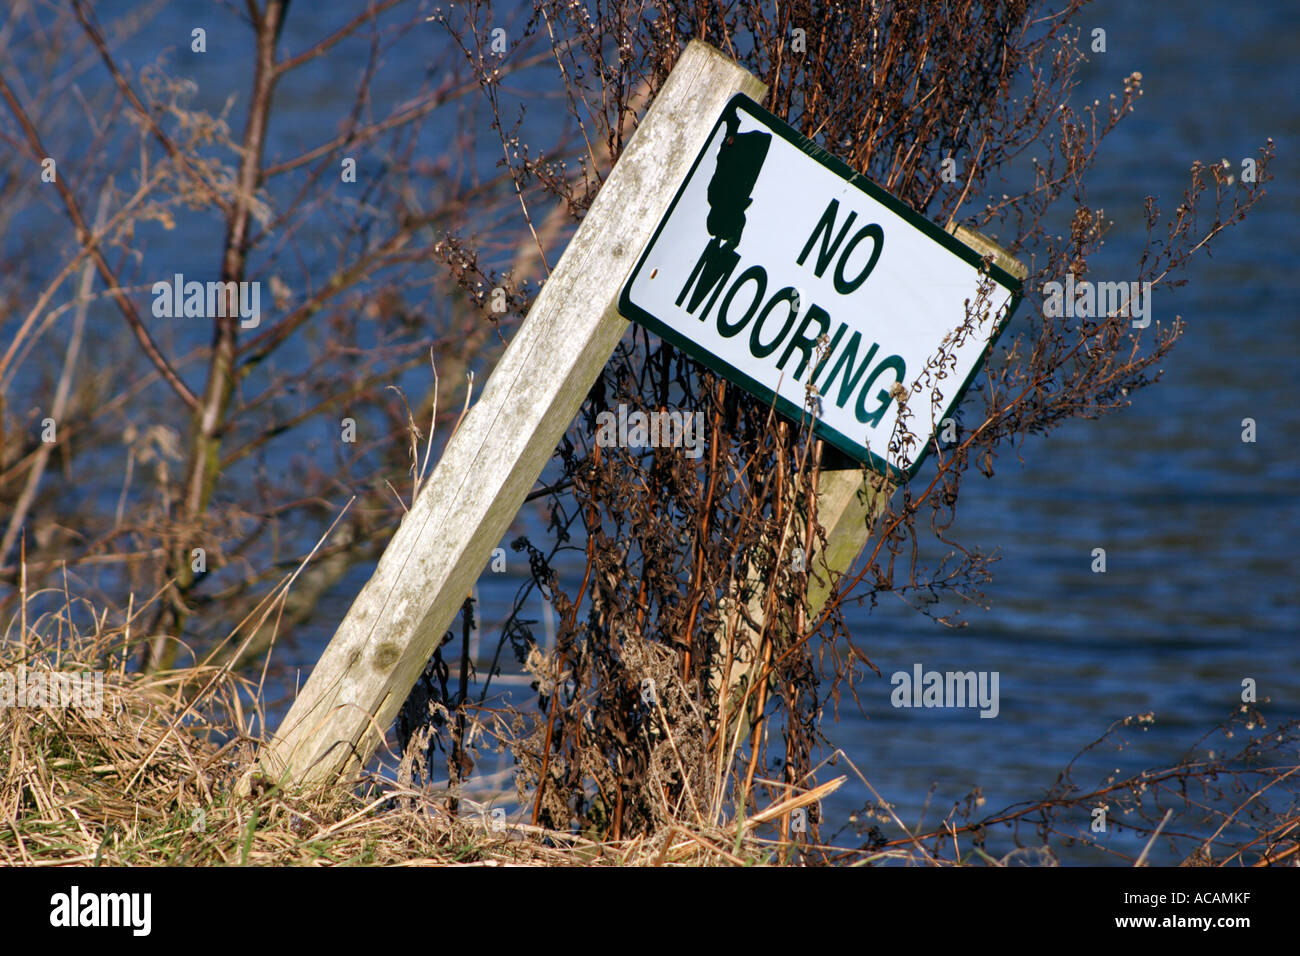 No mooring sign on Thames bank Stock Photo